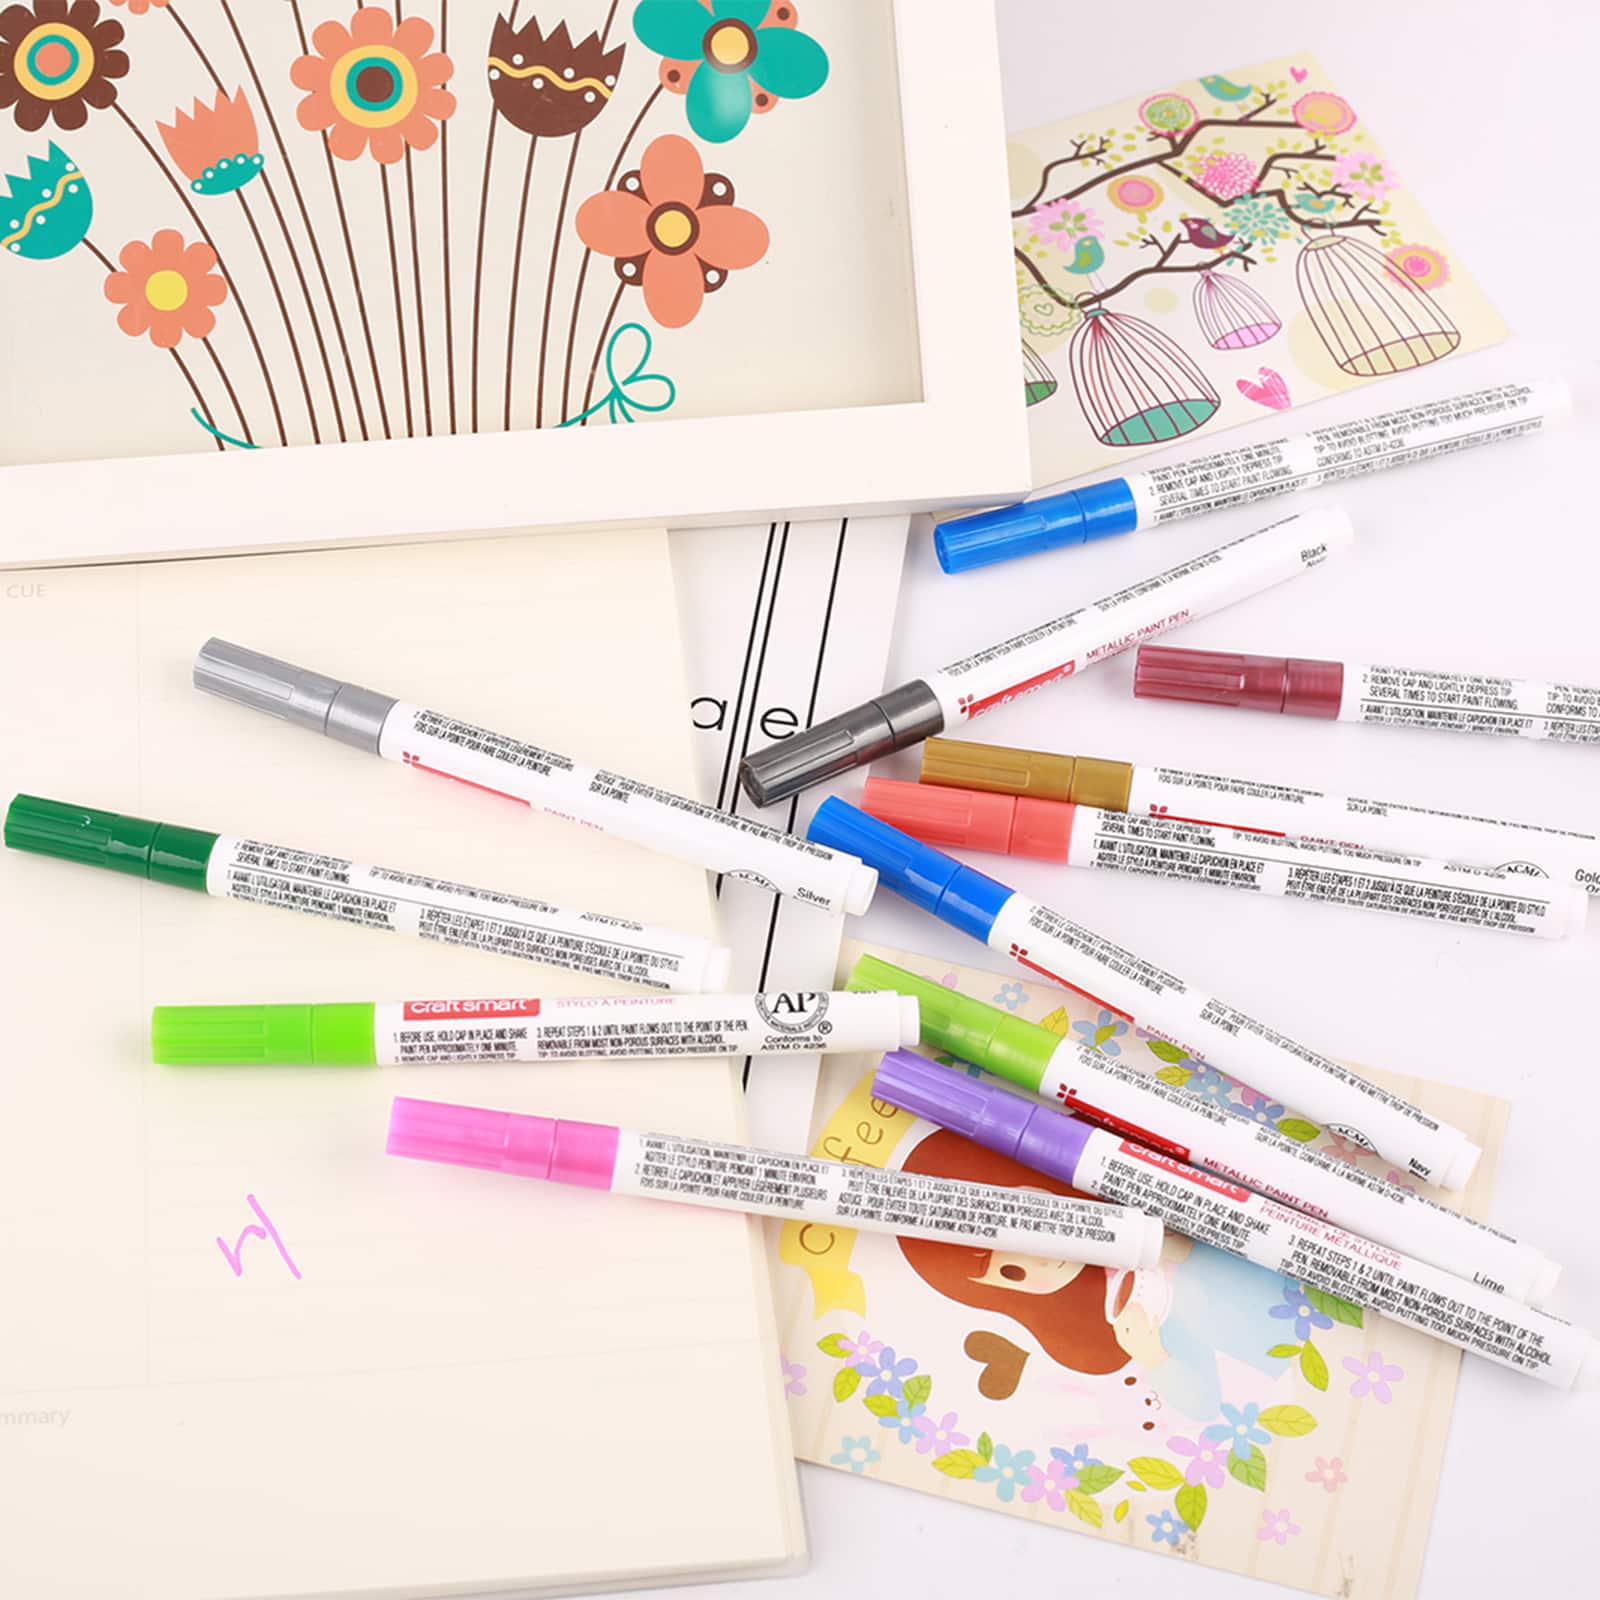 Medium Line 12 Color Paint Pen Set by Craft Smart®